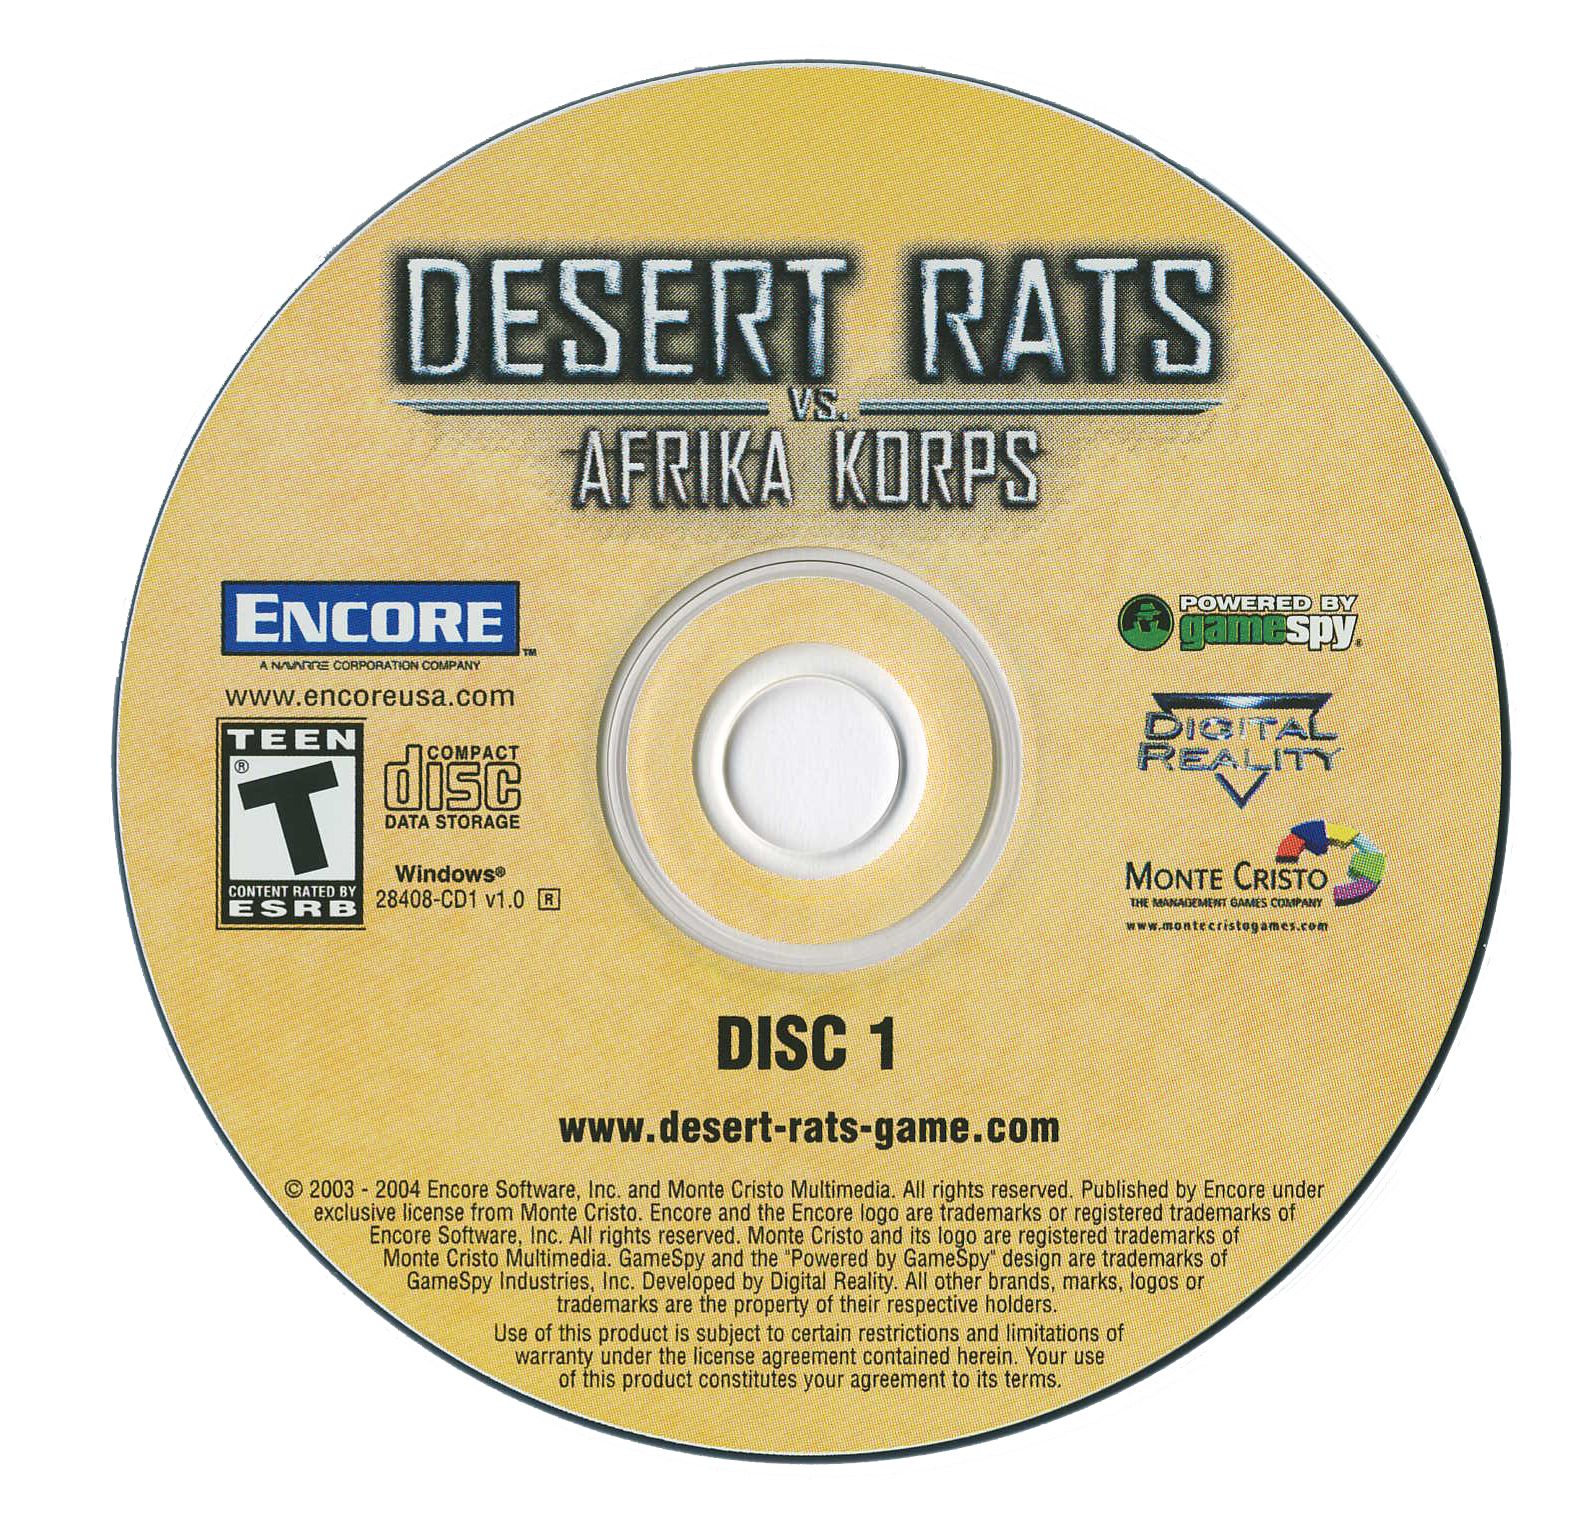 Desert rats vs afrika korps steam фото 62